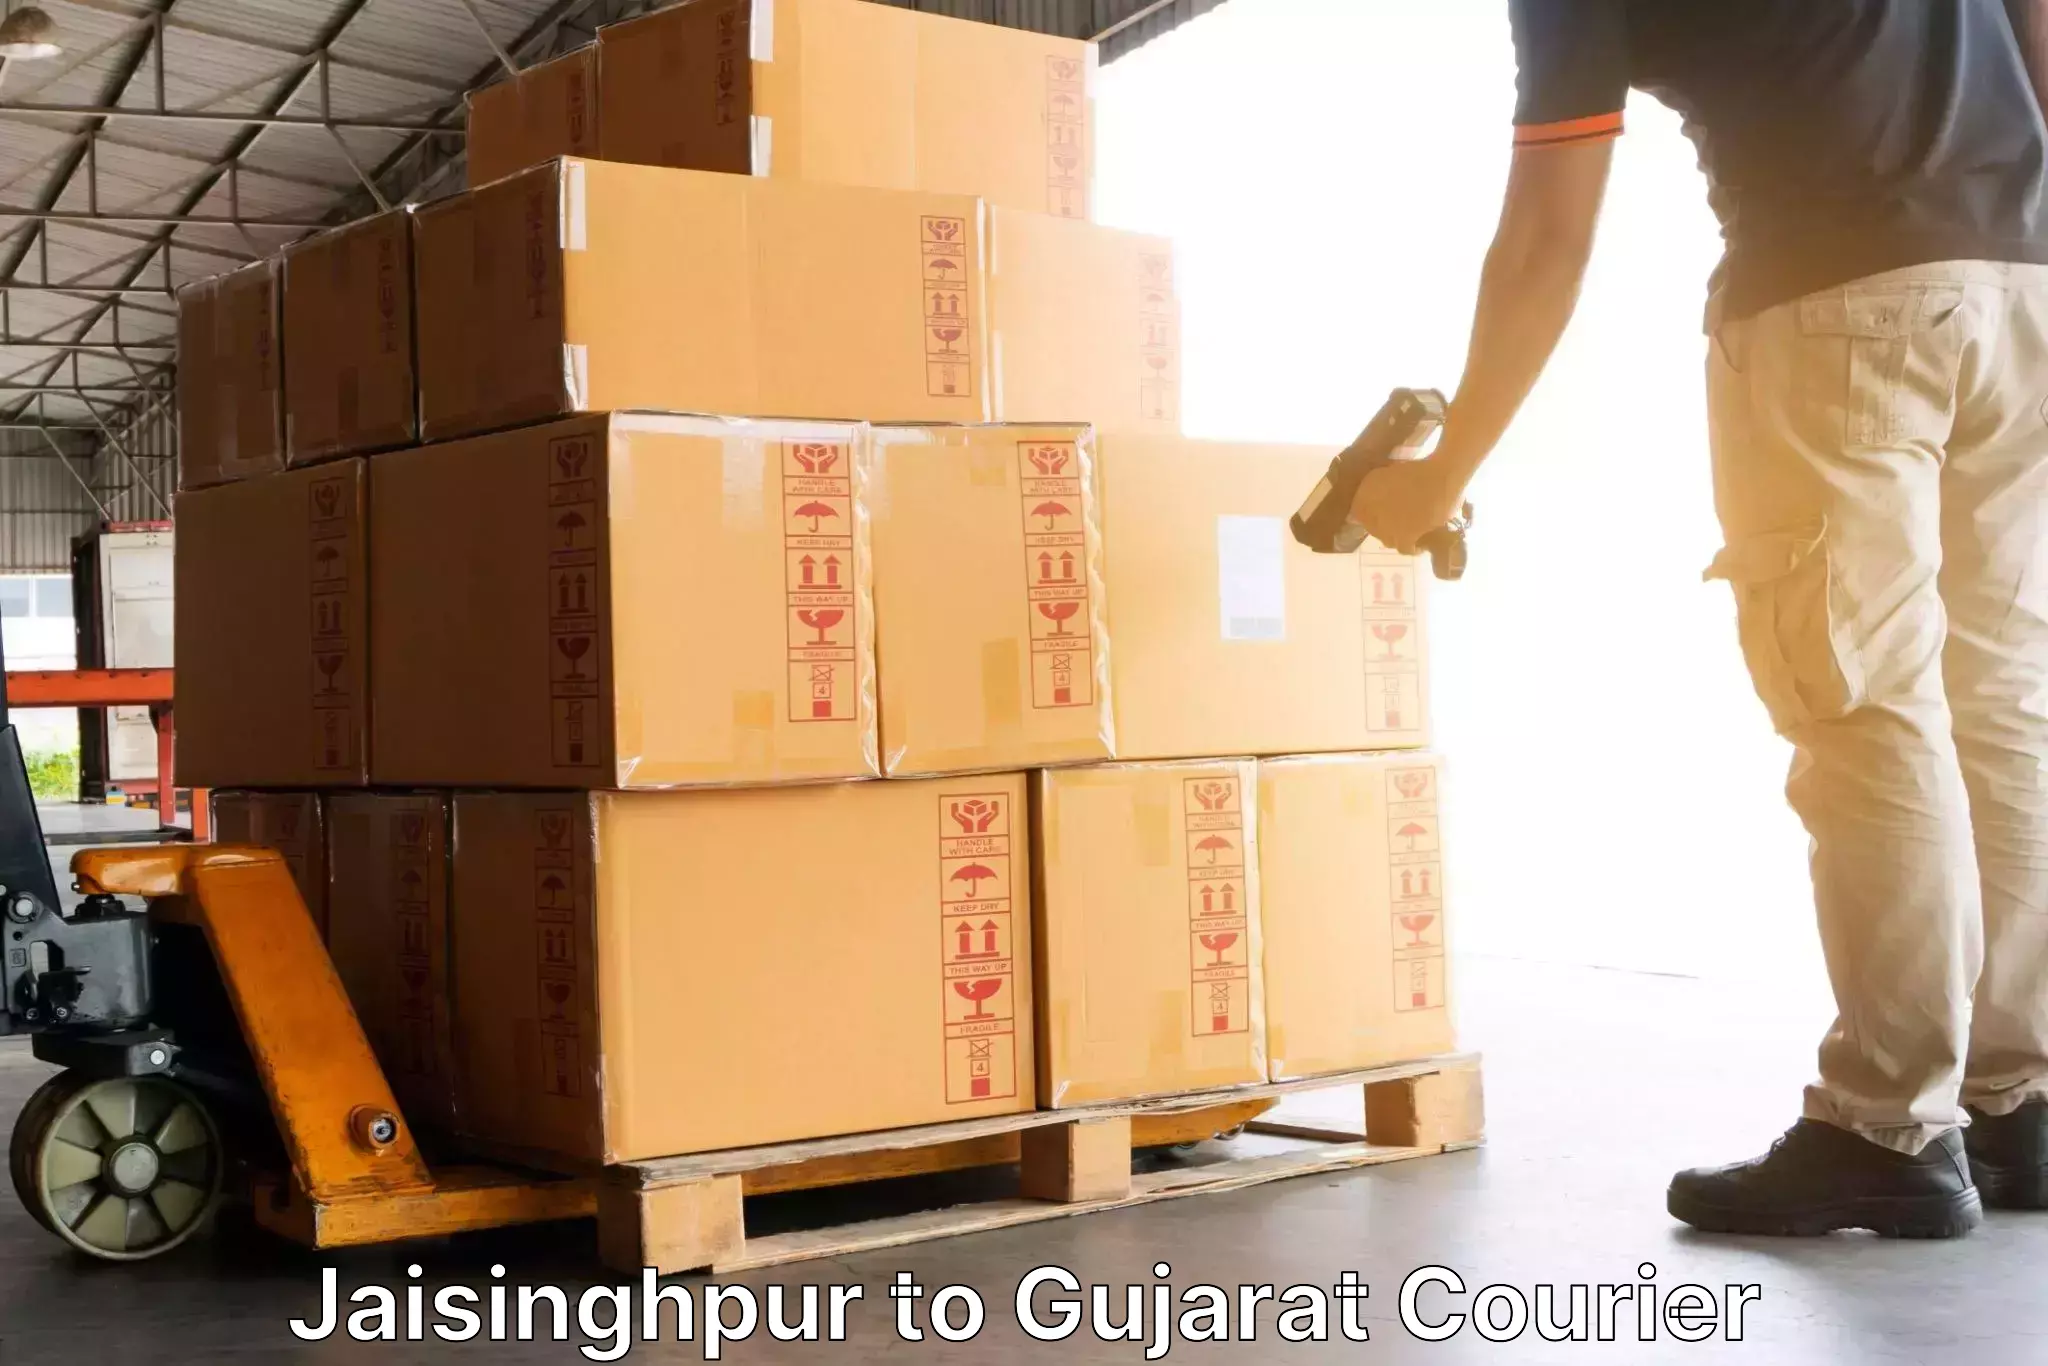 Professional courier services Jaisinghpur to Bavla